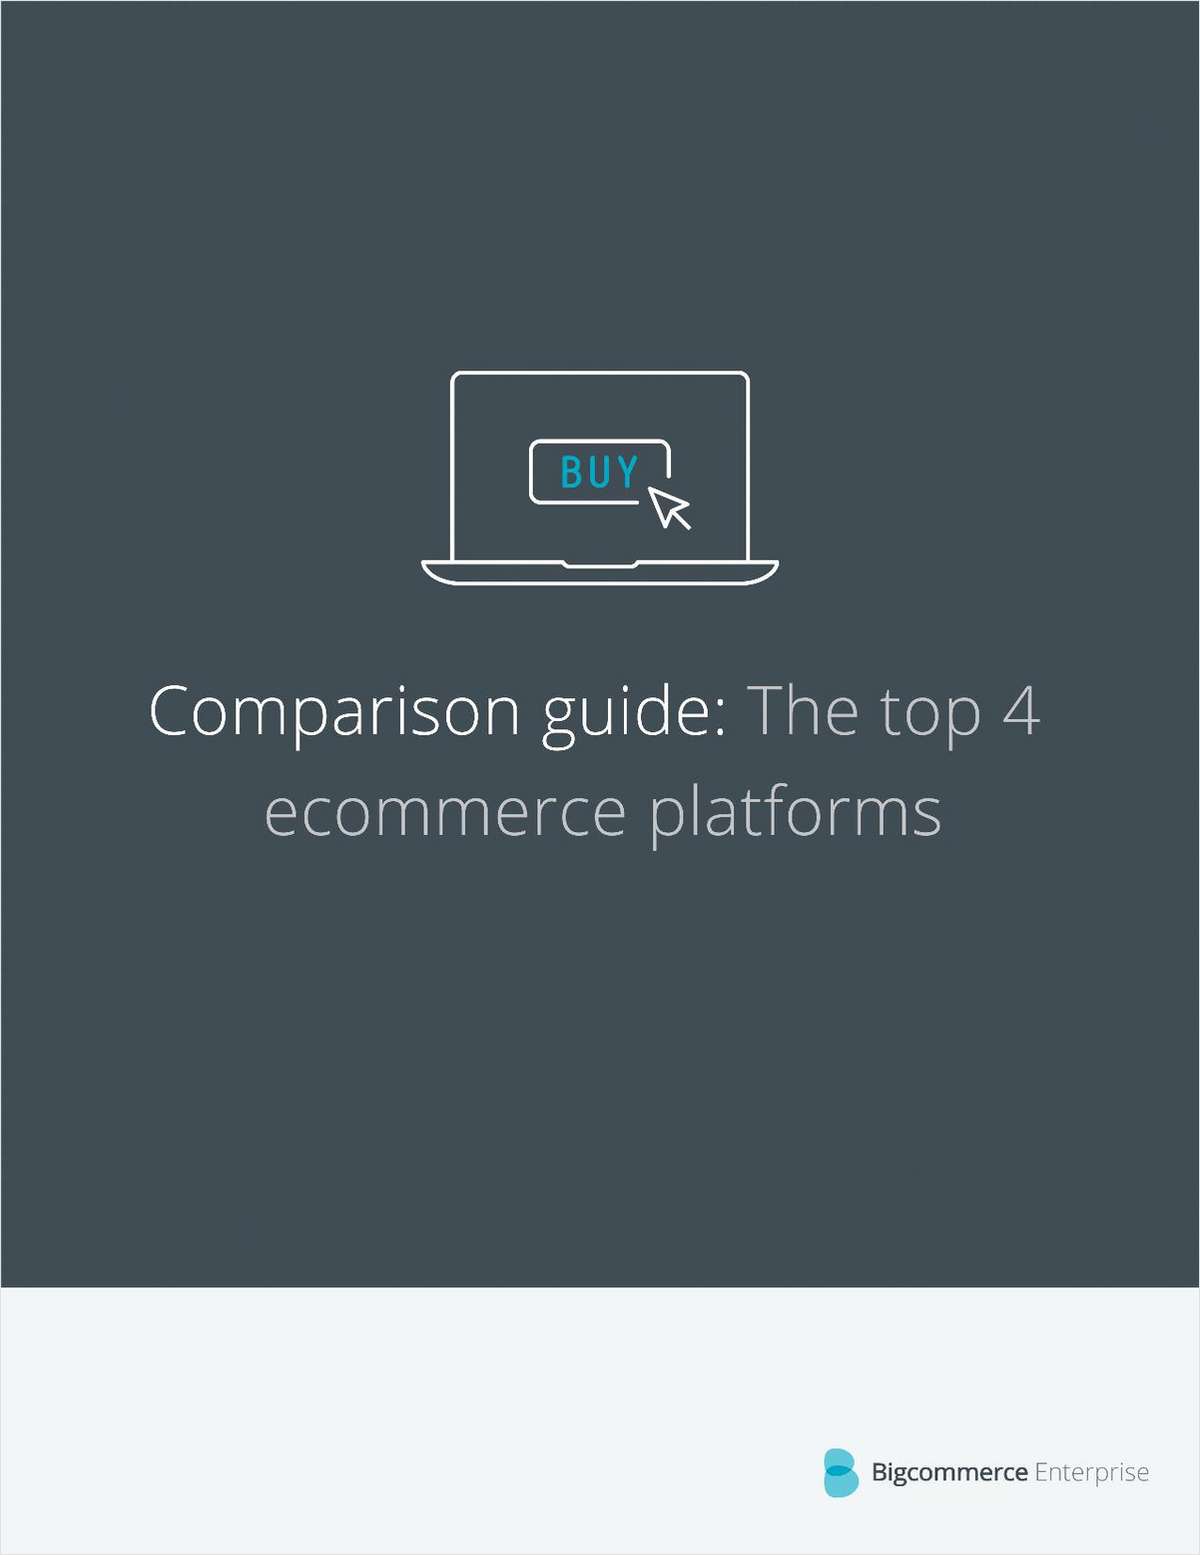 Top 4 Ecommerce Platform Comparison Guide